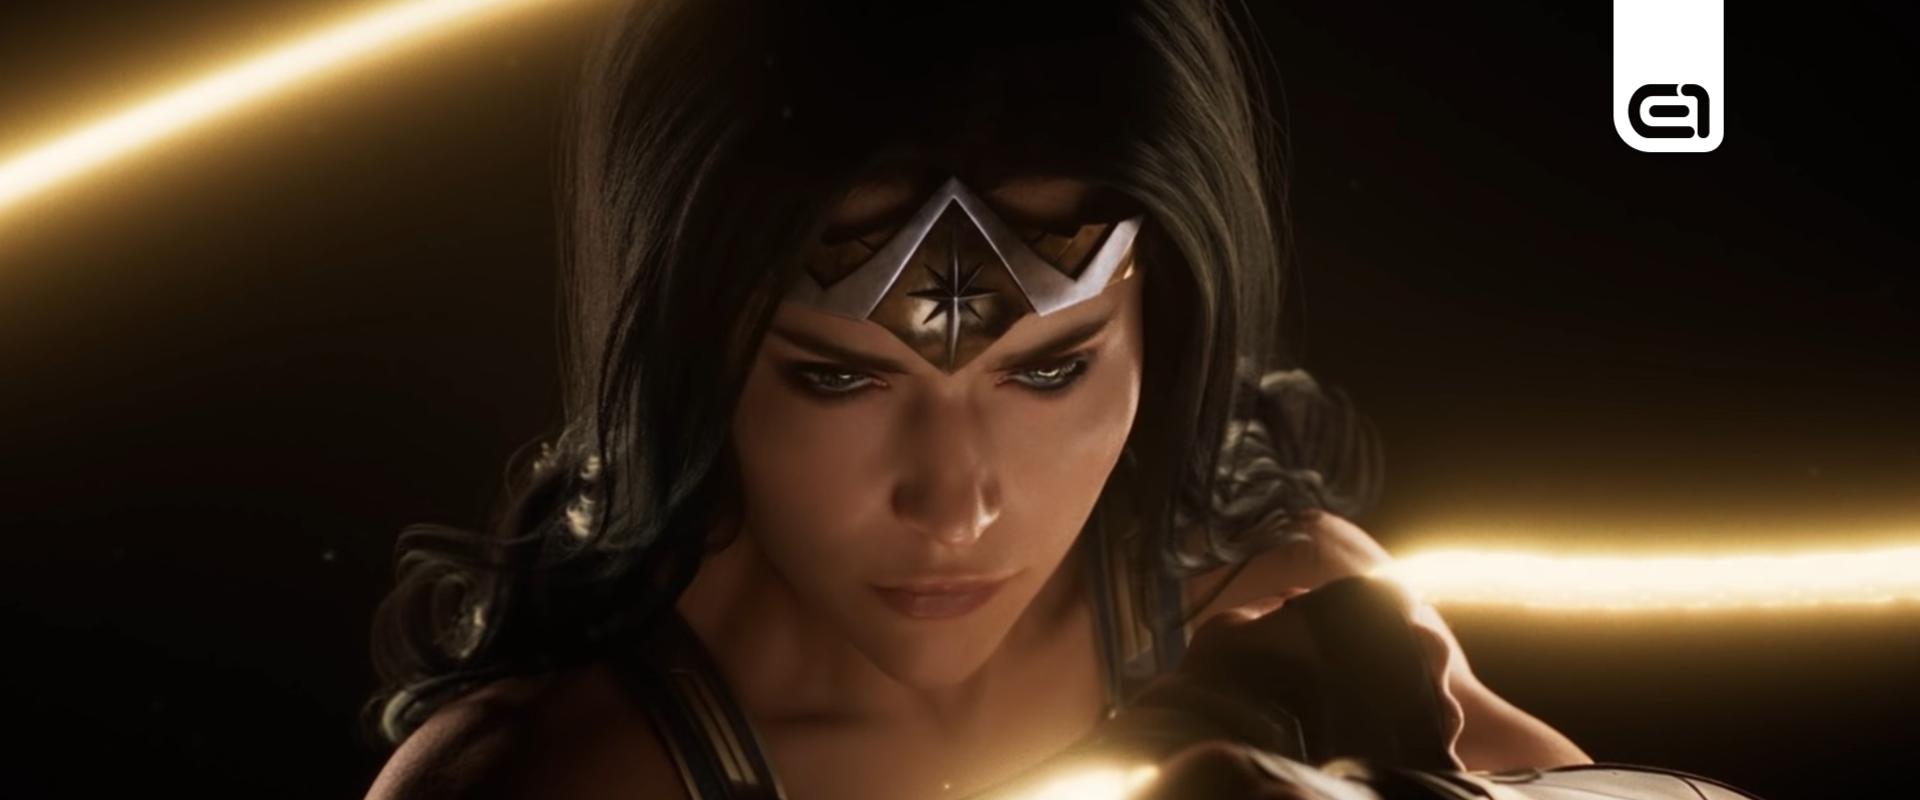 Kiszivároghatott a készülő Wonder Woman-játék egyik művészeti terve